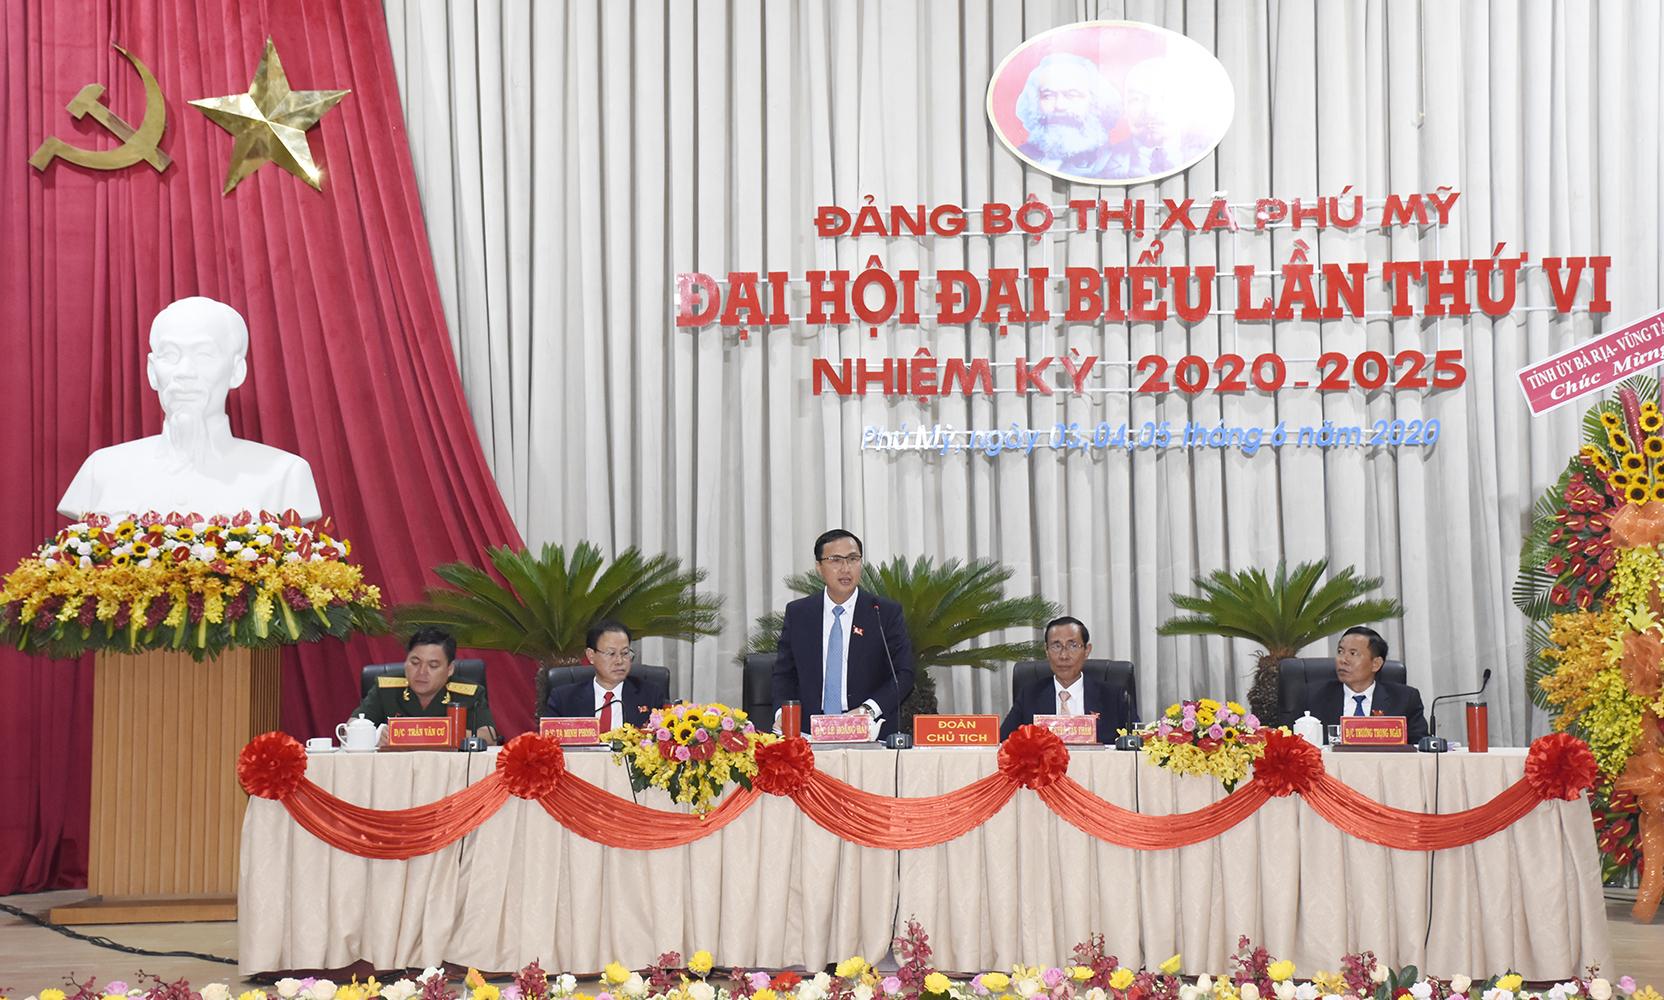 Đồng chí Lê Hoàng Hải, Bí thư Thị ủy Phú Mỹ trình bày Báo cáo chính trị tại Đại hội.